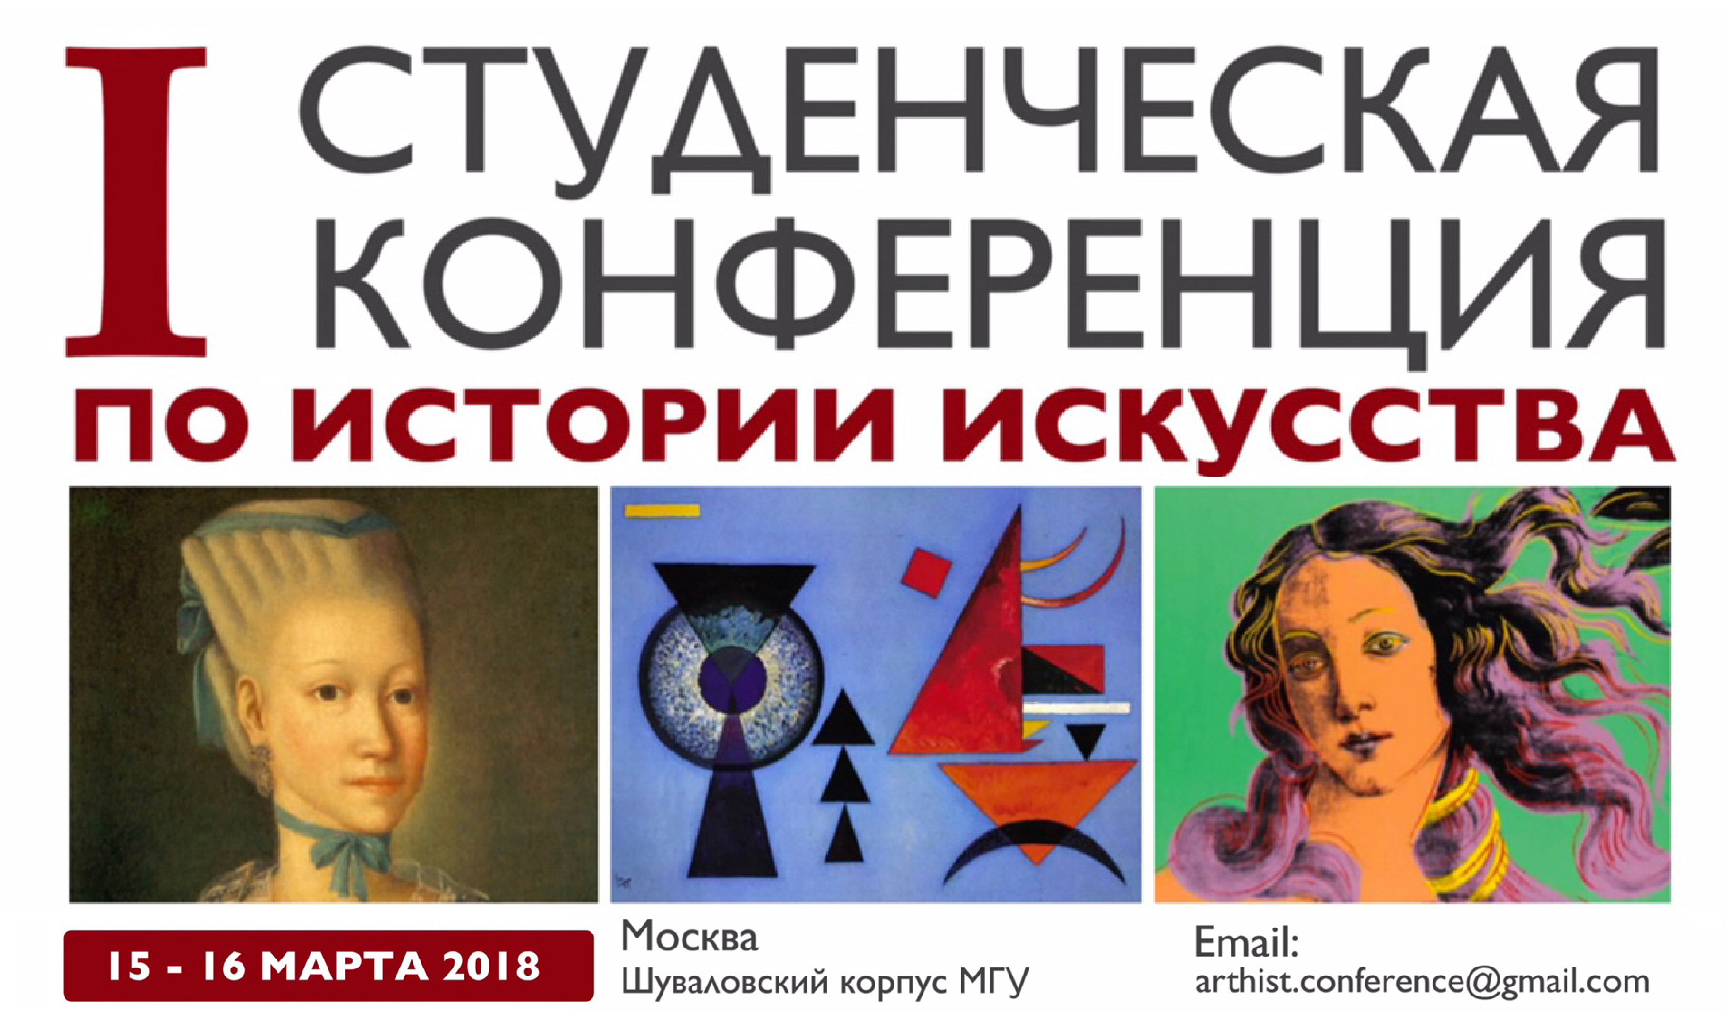 I Студенческая конференция, приуроченная к 160-летию преподавания истории искусства в Московском университете